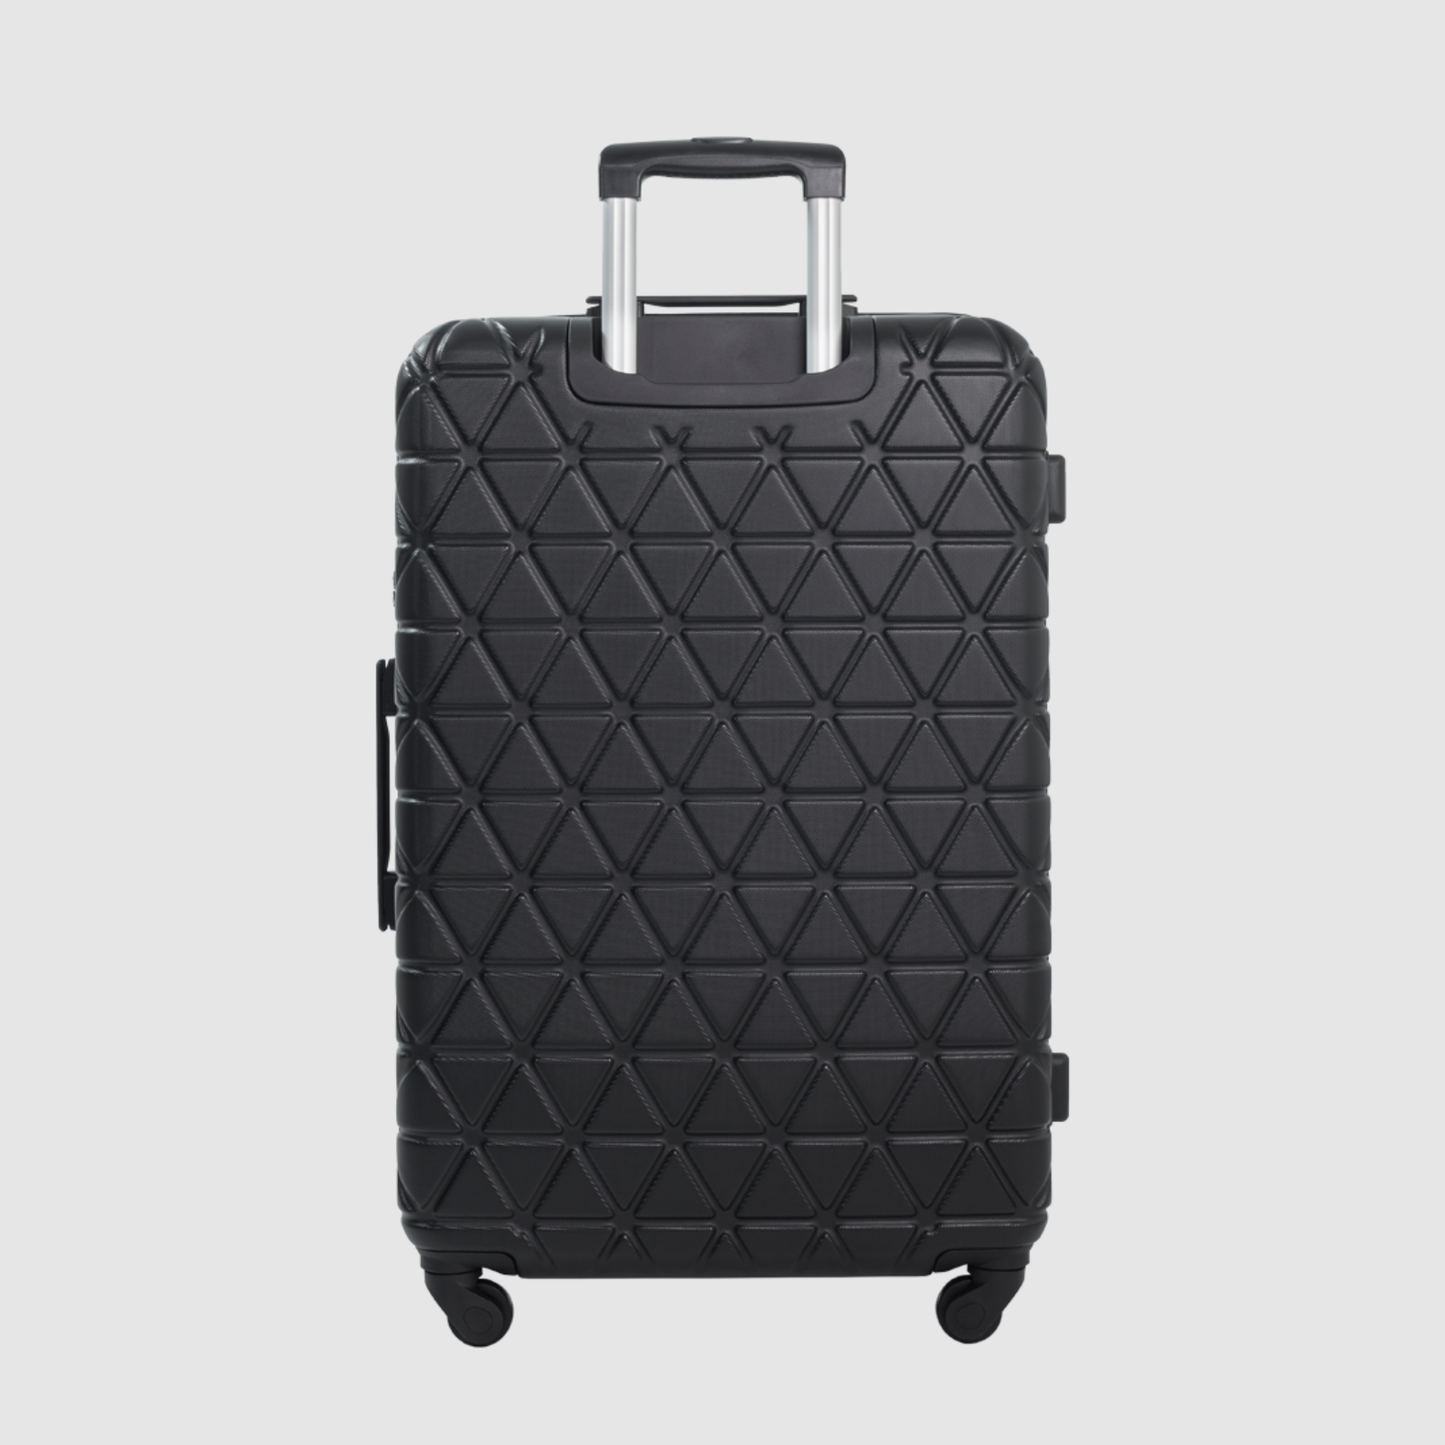 Onyx Black Paragon Extra Large Suitcase